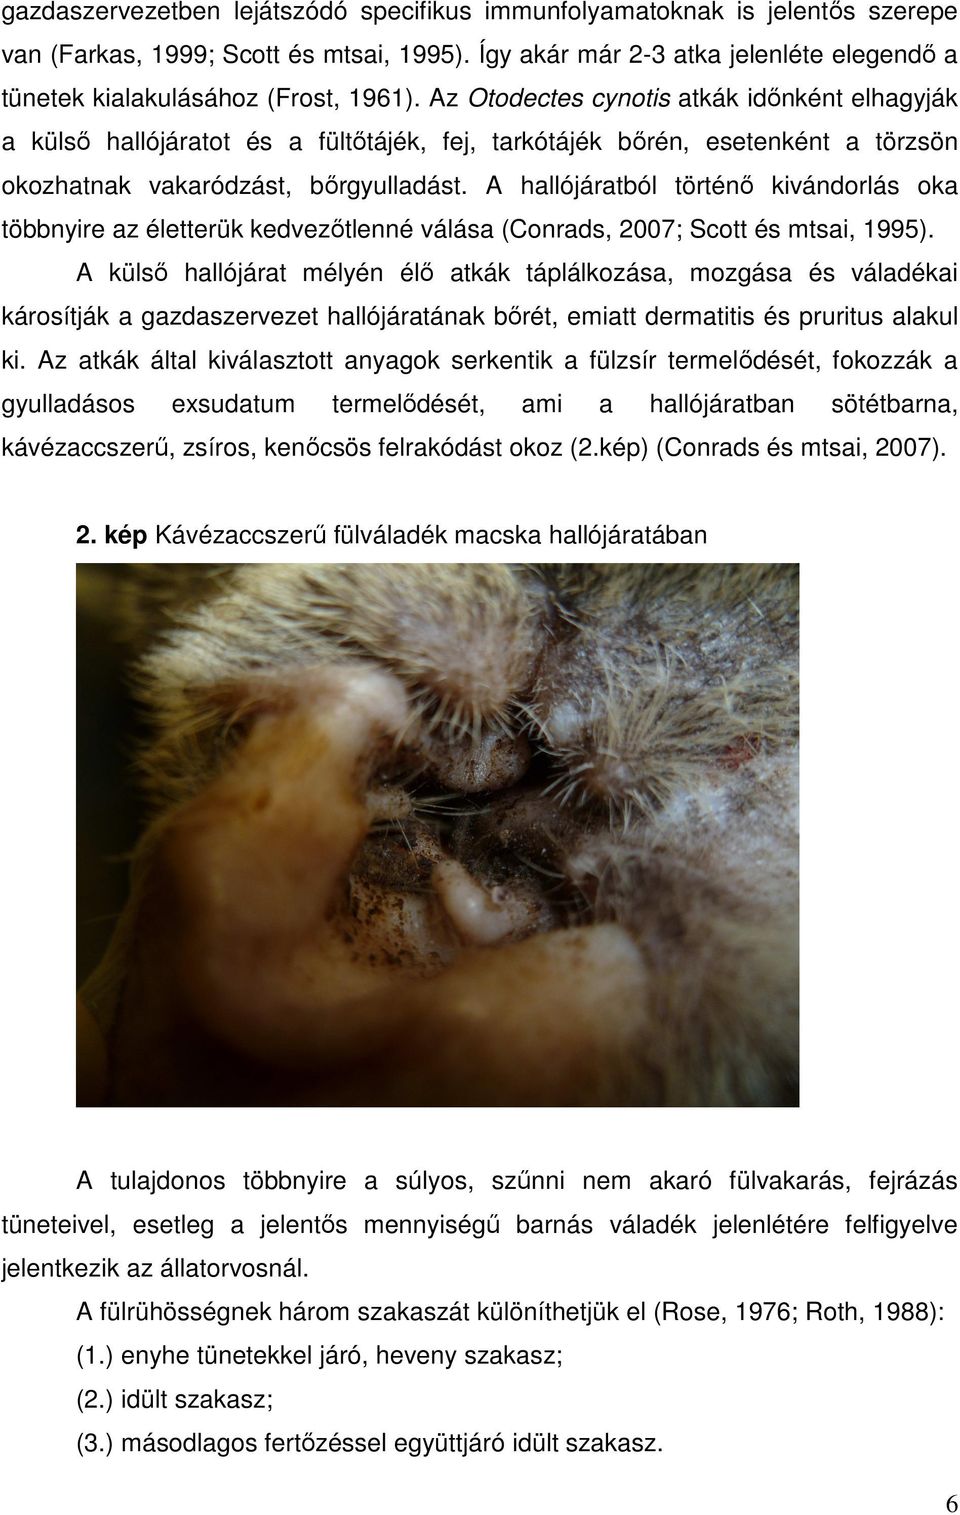 Az Otodectes cynotis atkák időnként elhagyják a külső hallójáratot és a fültőtájék, fej, tarkótájék bőrén, esetenként a törzsön okozhatnak vakaródzást, bőrgyulladást.